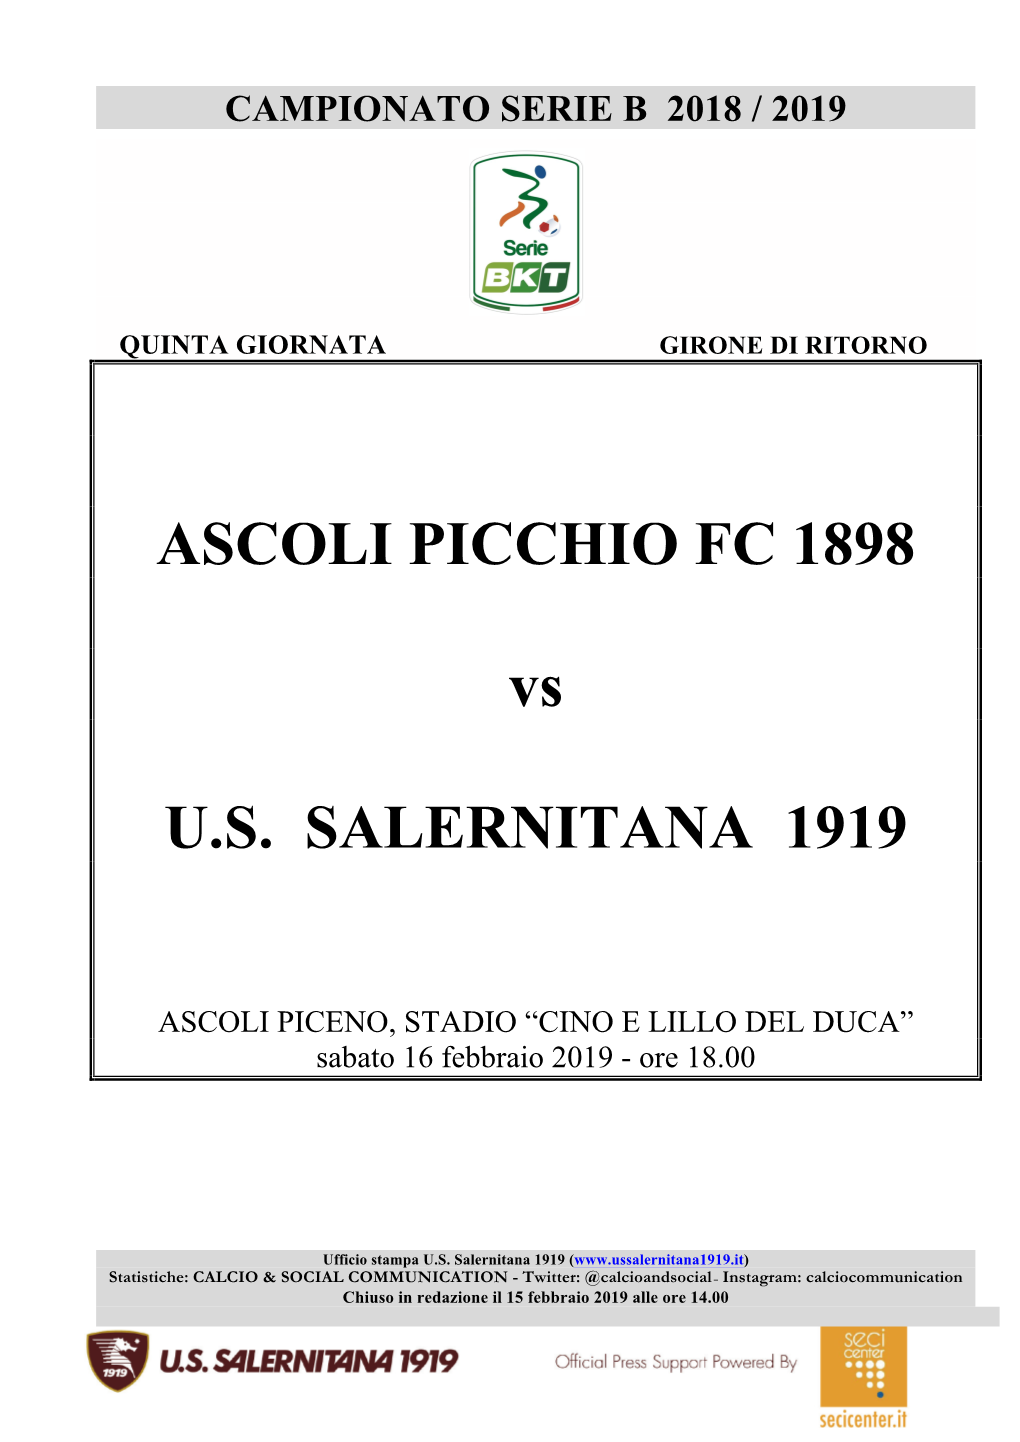 ASCOLI PICCHIO FC 1898 Vs U.S. SALERNITANA 1919